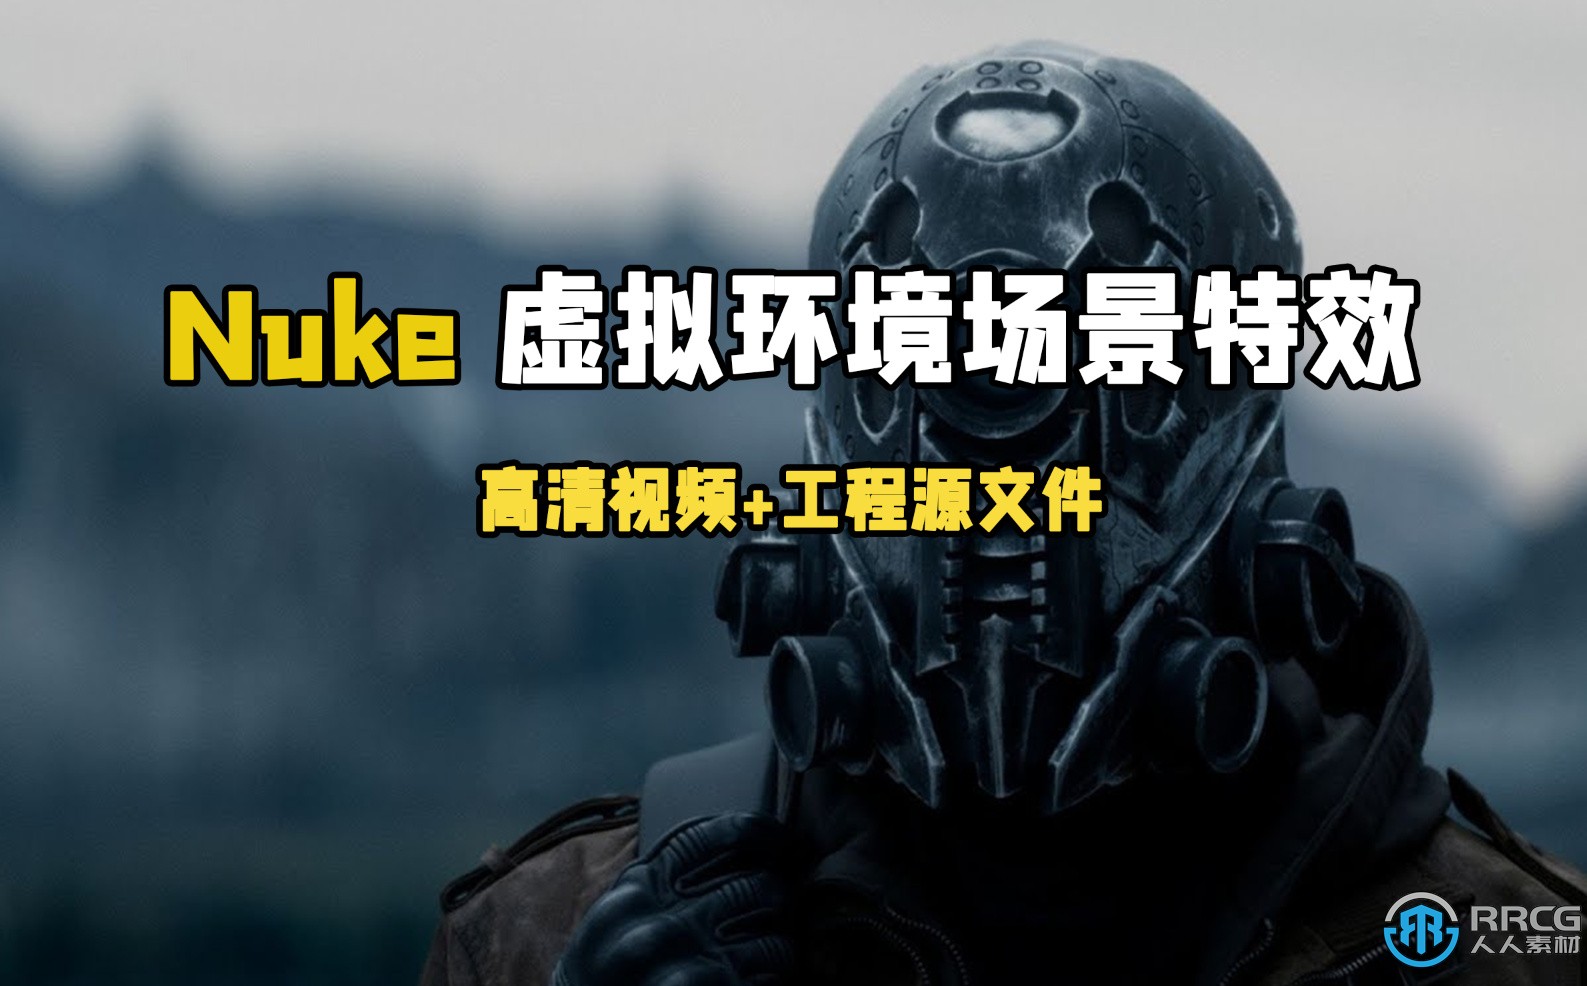 Nuke虚拟环境场景CG特效合成制作大师级视频教程